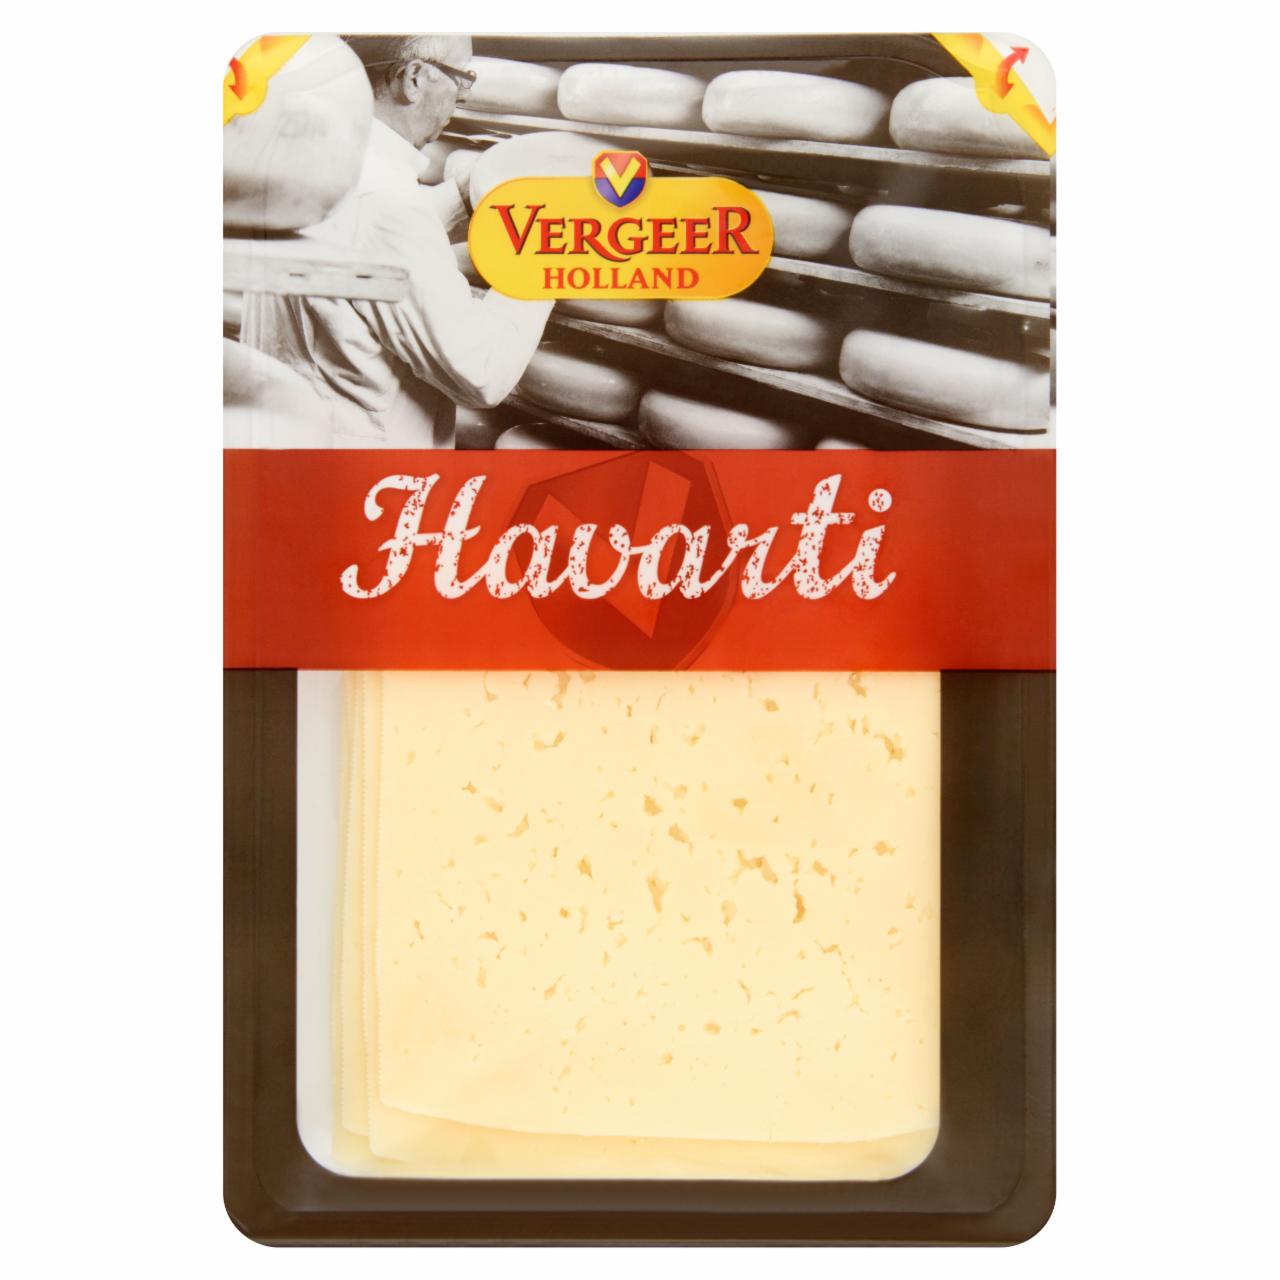 Képek - Vergeer Holland Havarti zsíros, félkemény, szeletelt holland sajt 100 g